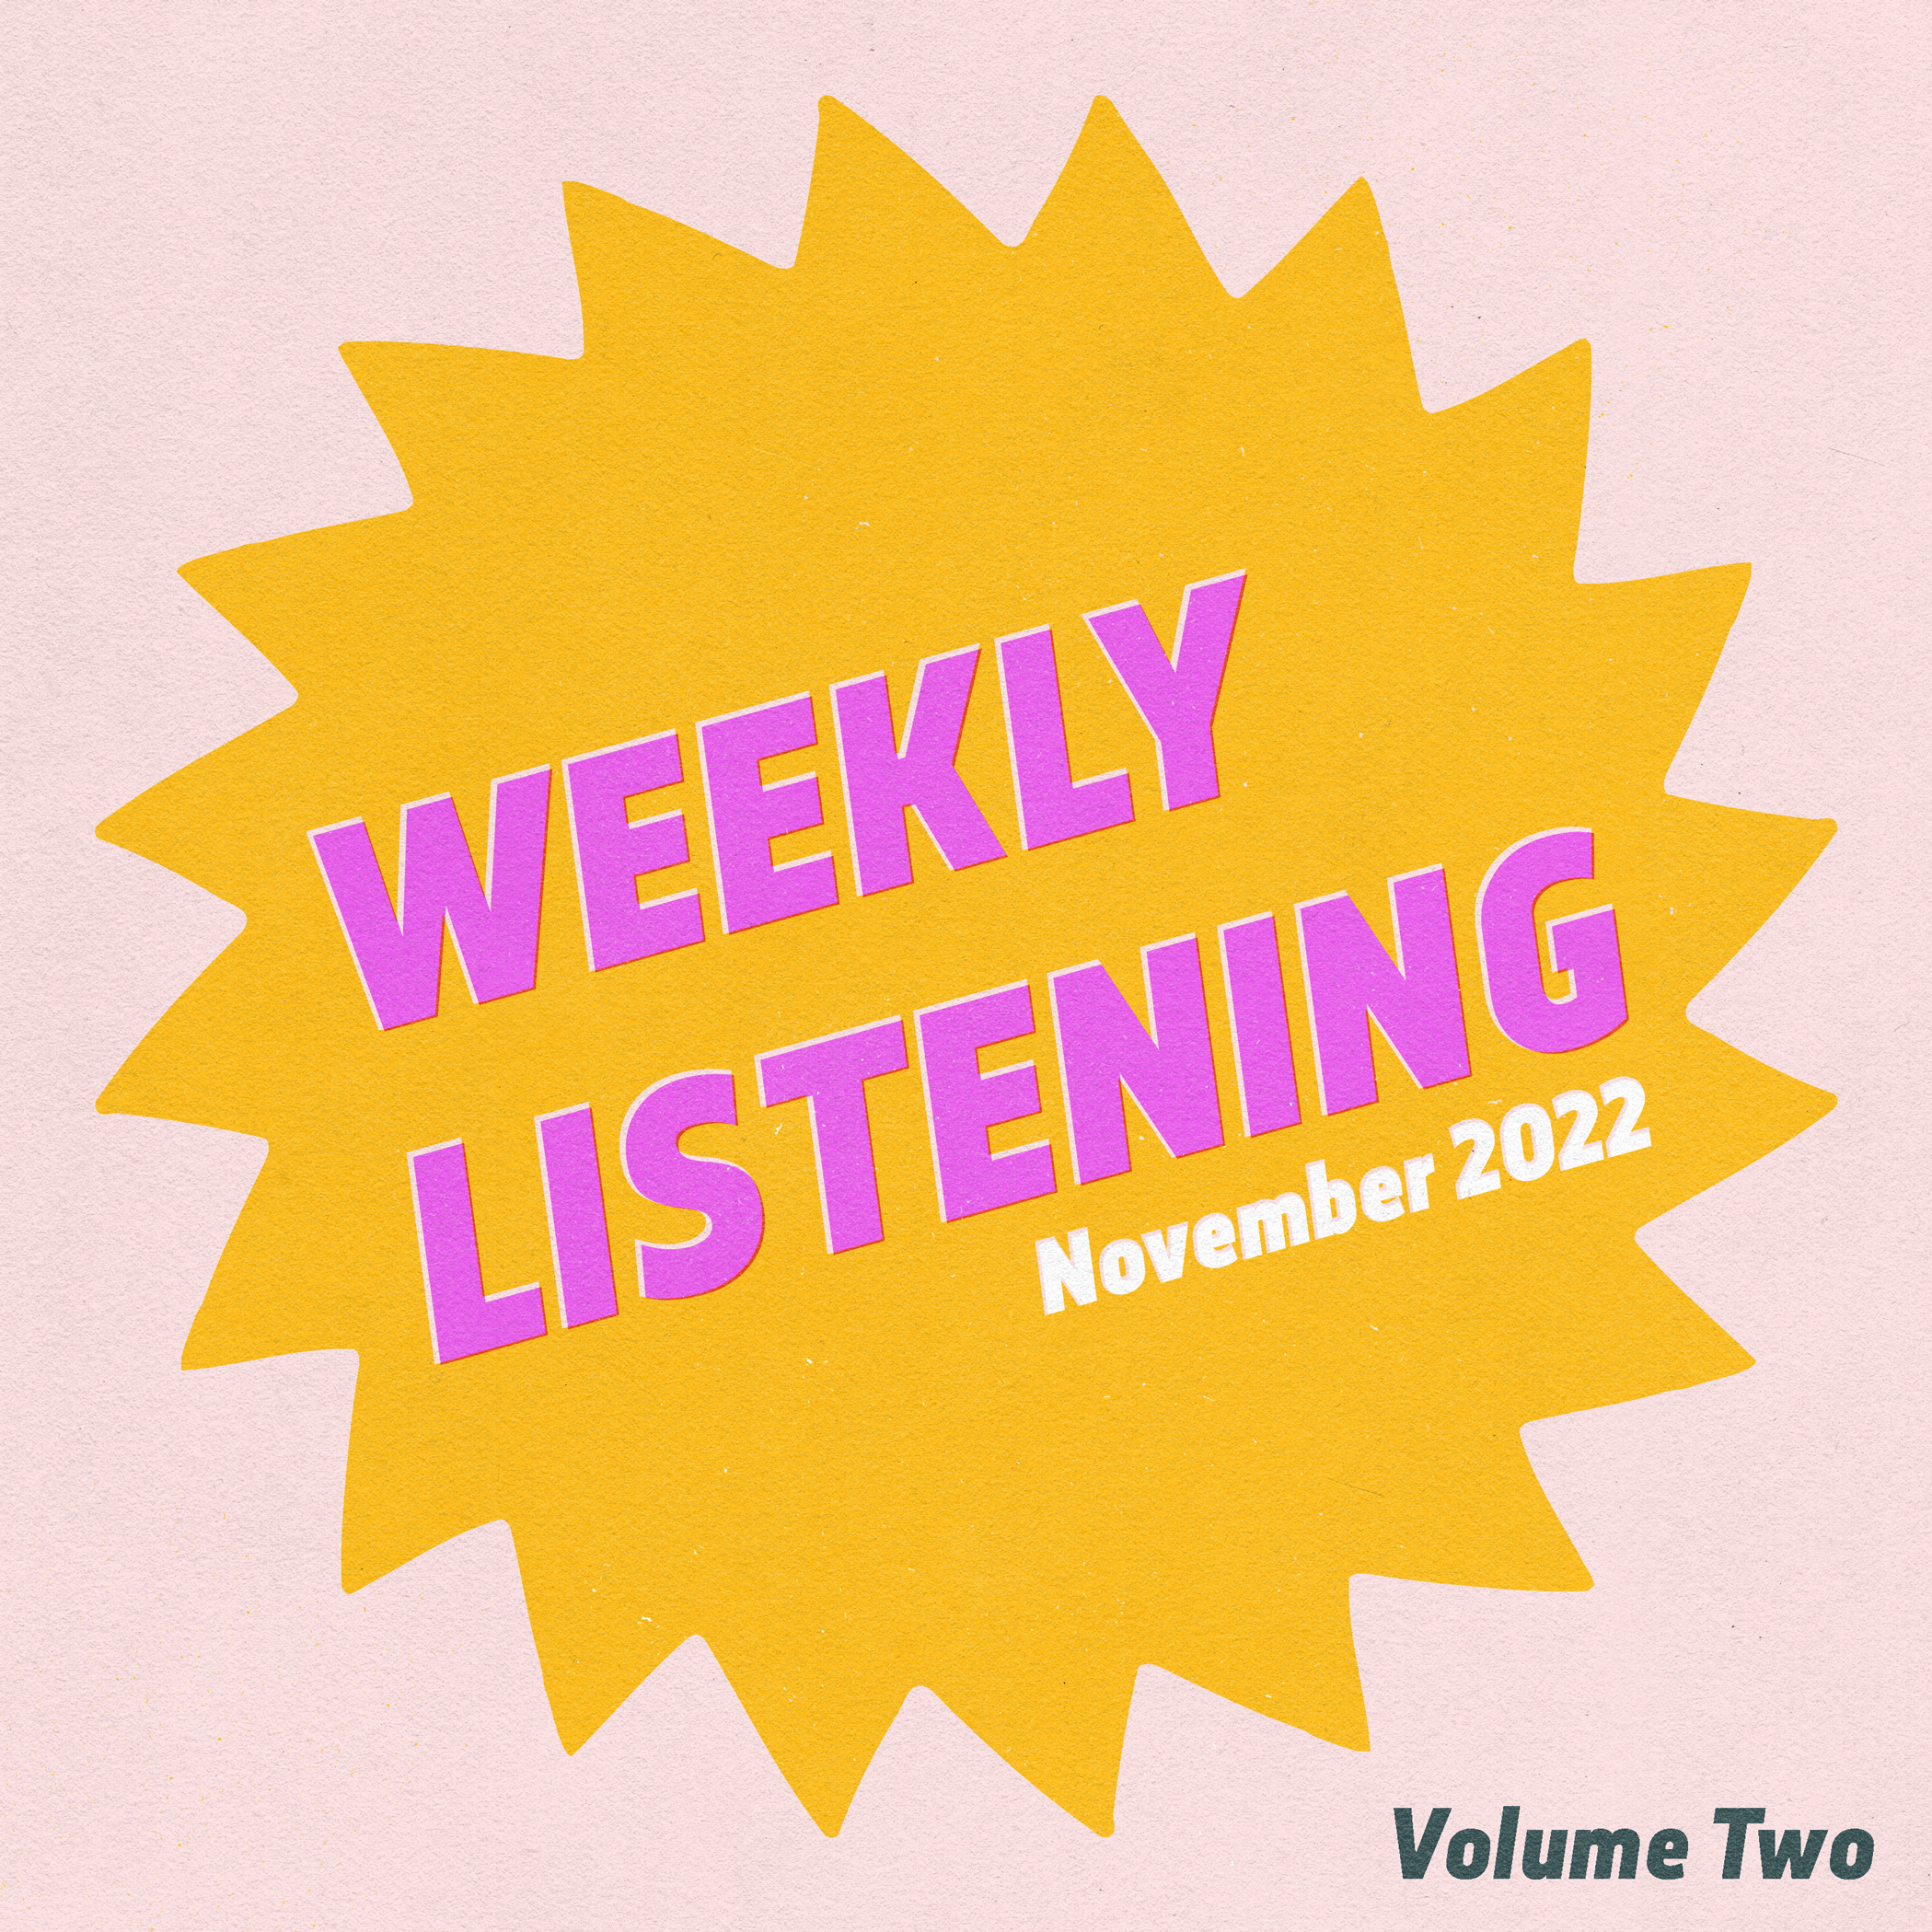 weekly listening november 2022 volume 2